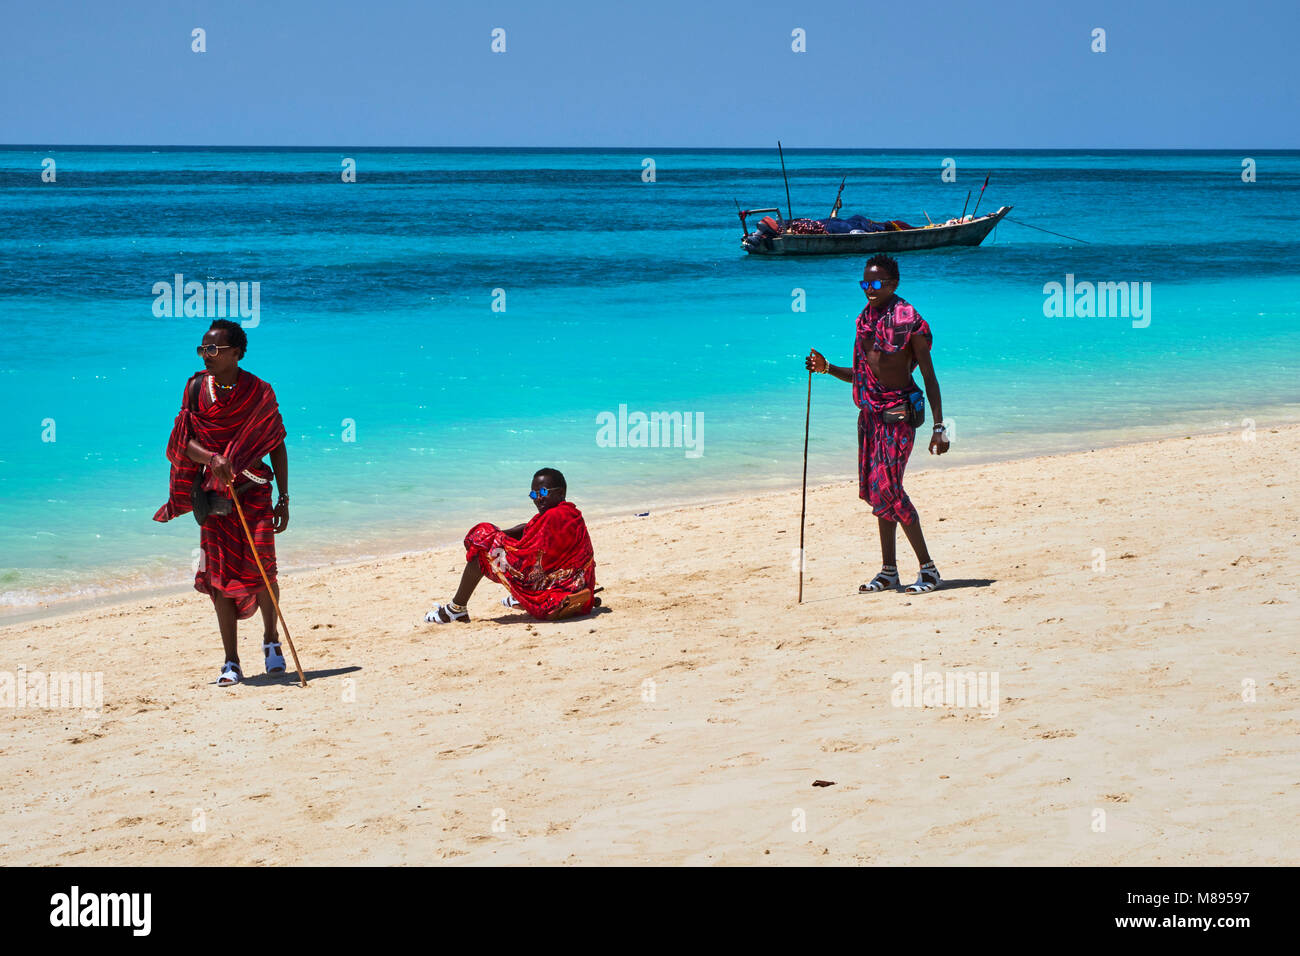 Tanzania, Zanzibar island, Unguja, Masai at Nungwi beach Stock Photo